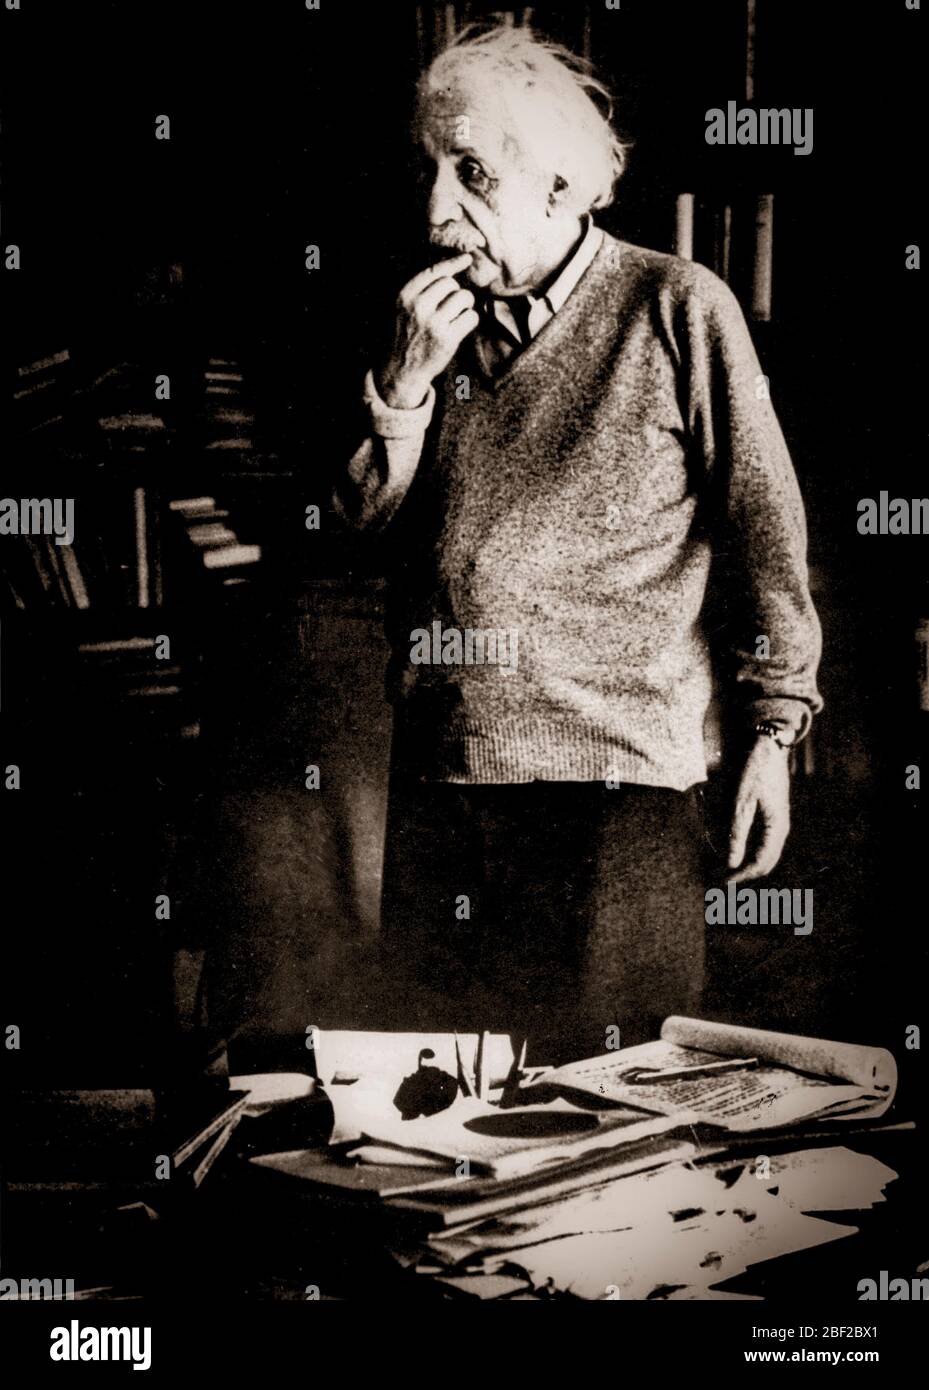 1 janvier 1950 - Princeton, NJ, États-Unis - physicien théorique ALBERT EINSTEIN, largement considéré comme le scientifique le plus important du XXe siècle et l'un des plus grands physiciens de tous les temps, A produit une grande partie de son travail remarquable pendant son séjour à l'Office des brevets et dans son temps libre. Bien que mieux connu pour la théorie de la relativité, il a reçu le prix Nobel de physique de 1921. Banque D'Images